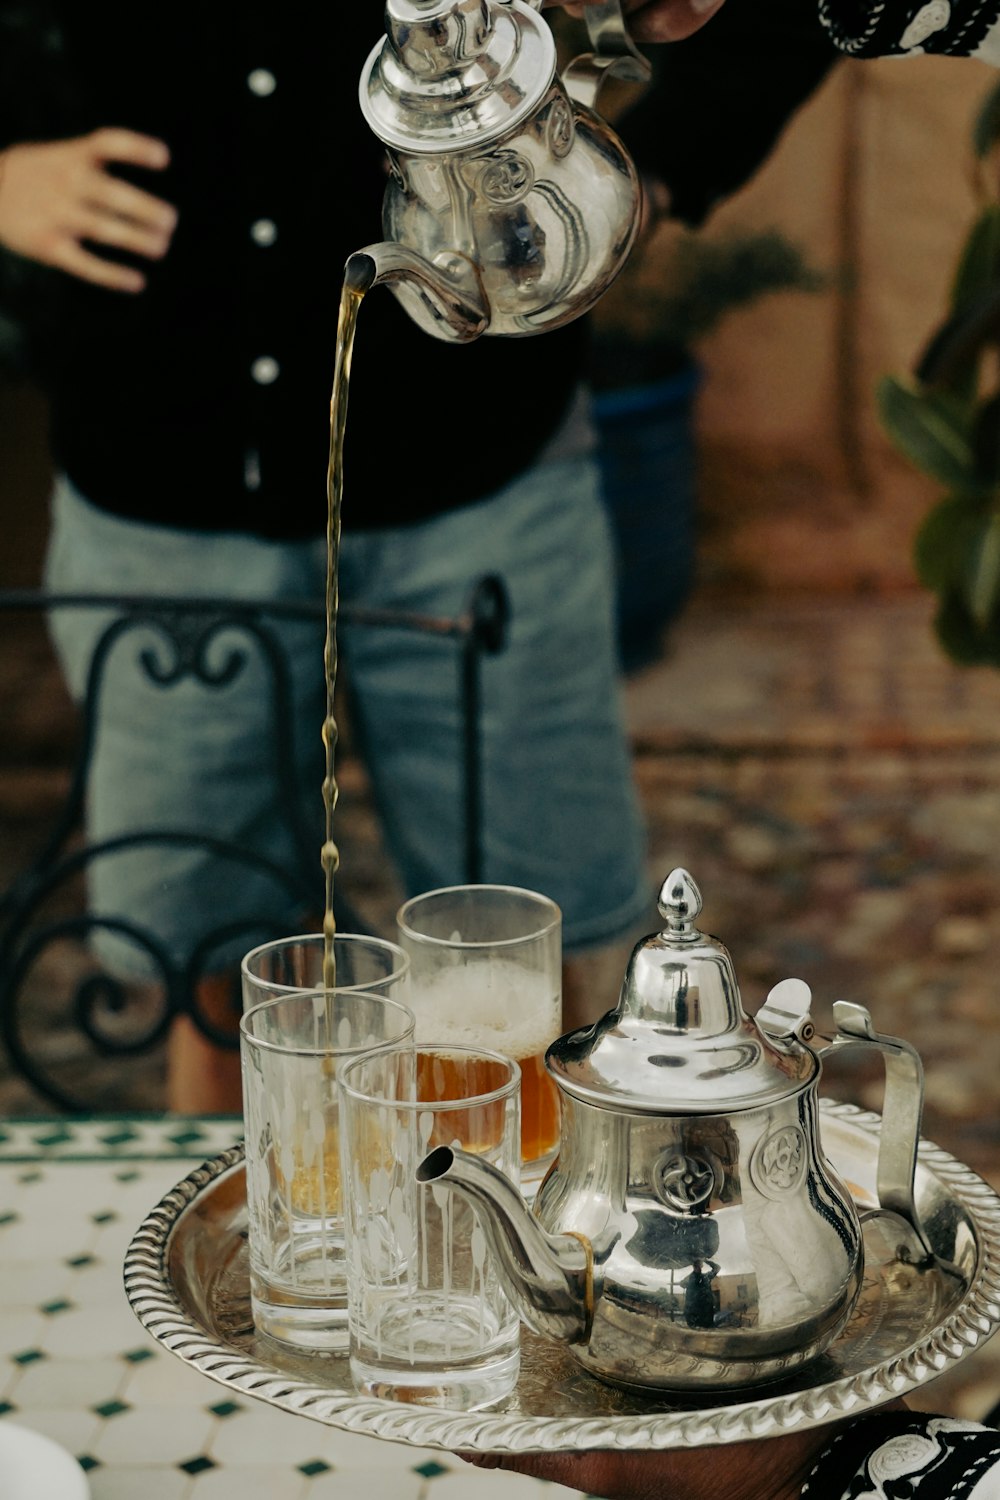 una persona vertiendo una bebida en un vaso